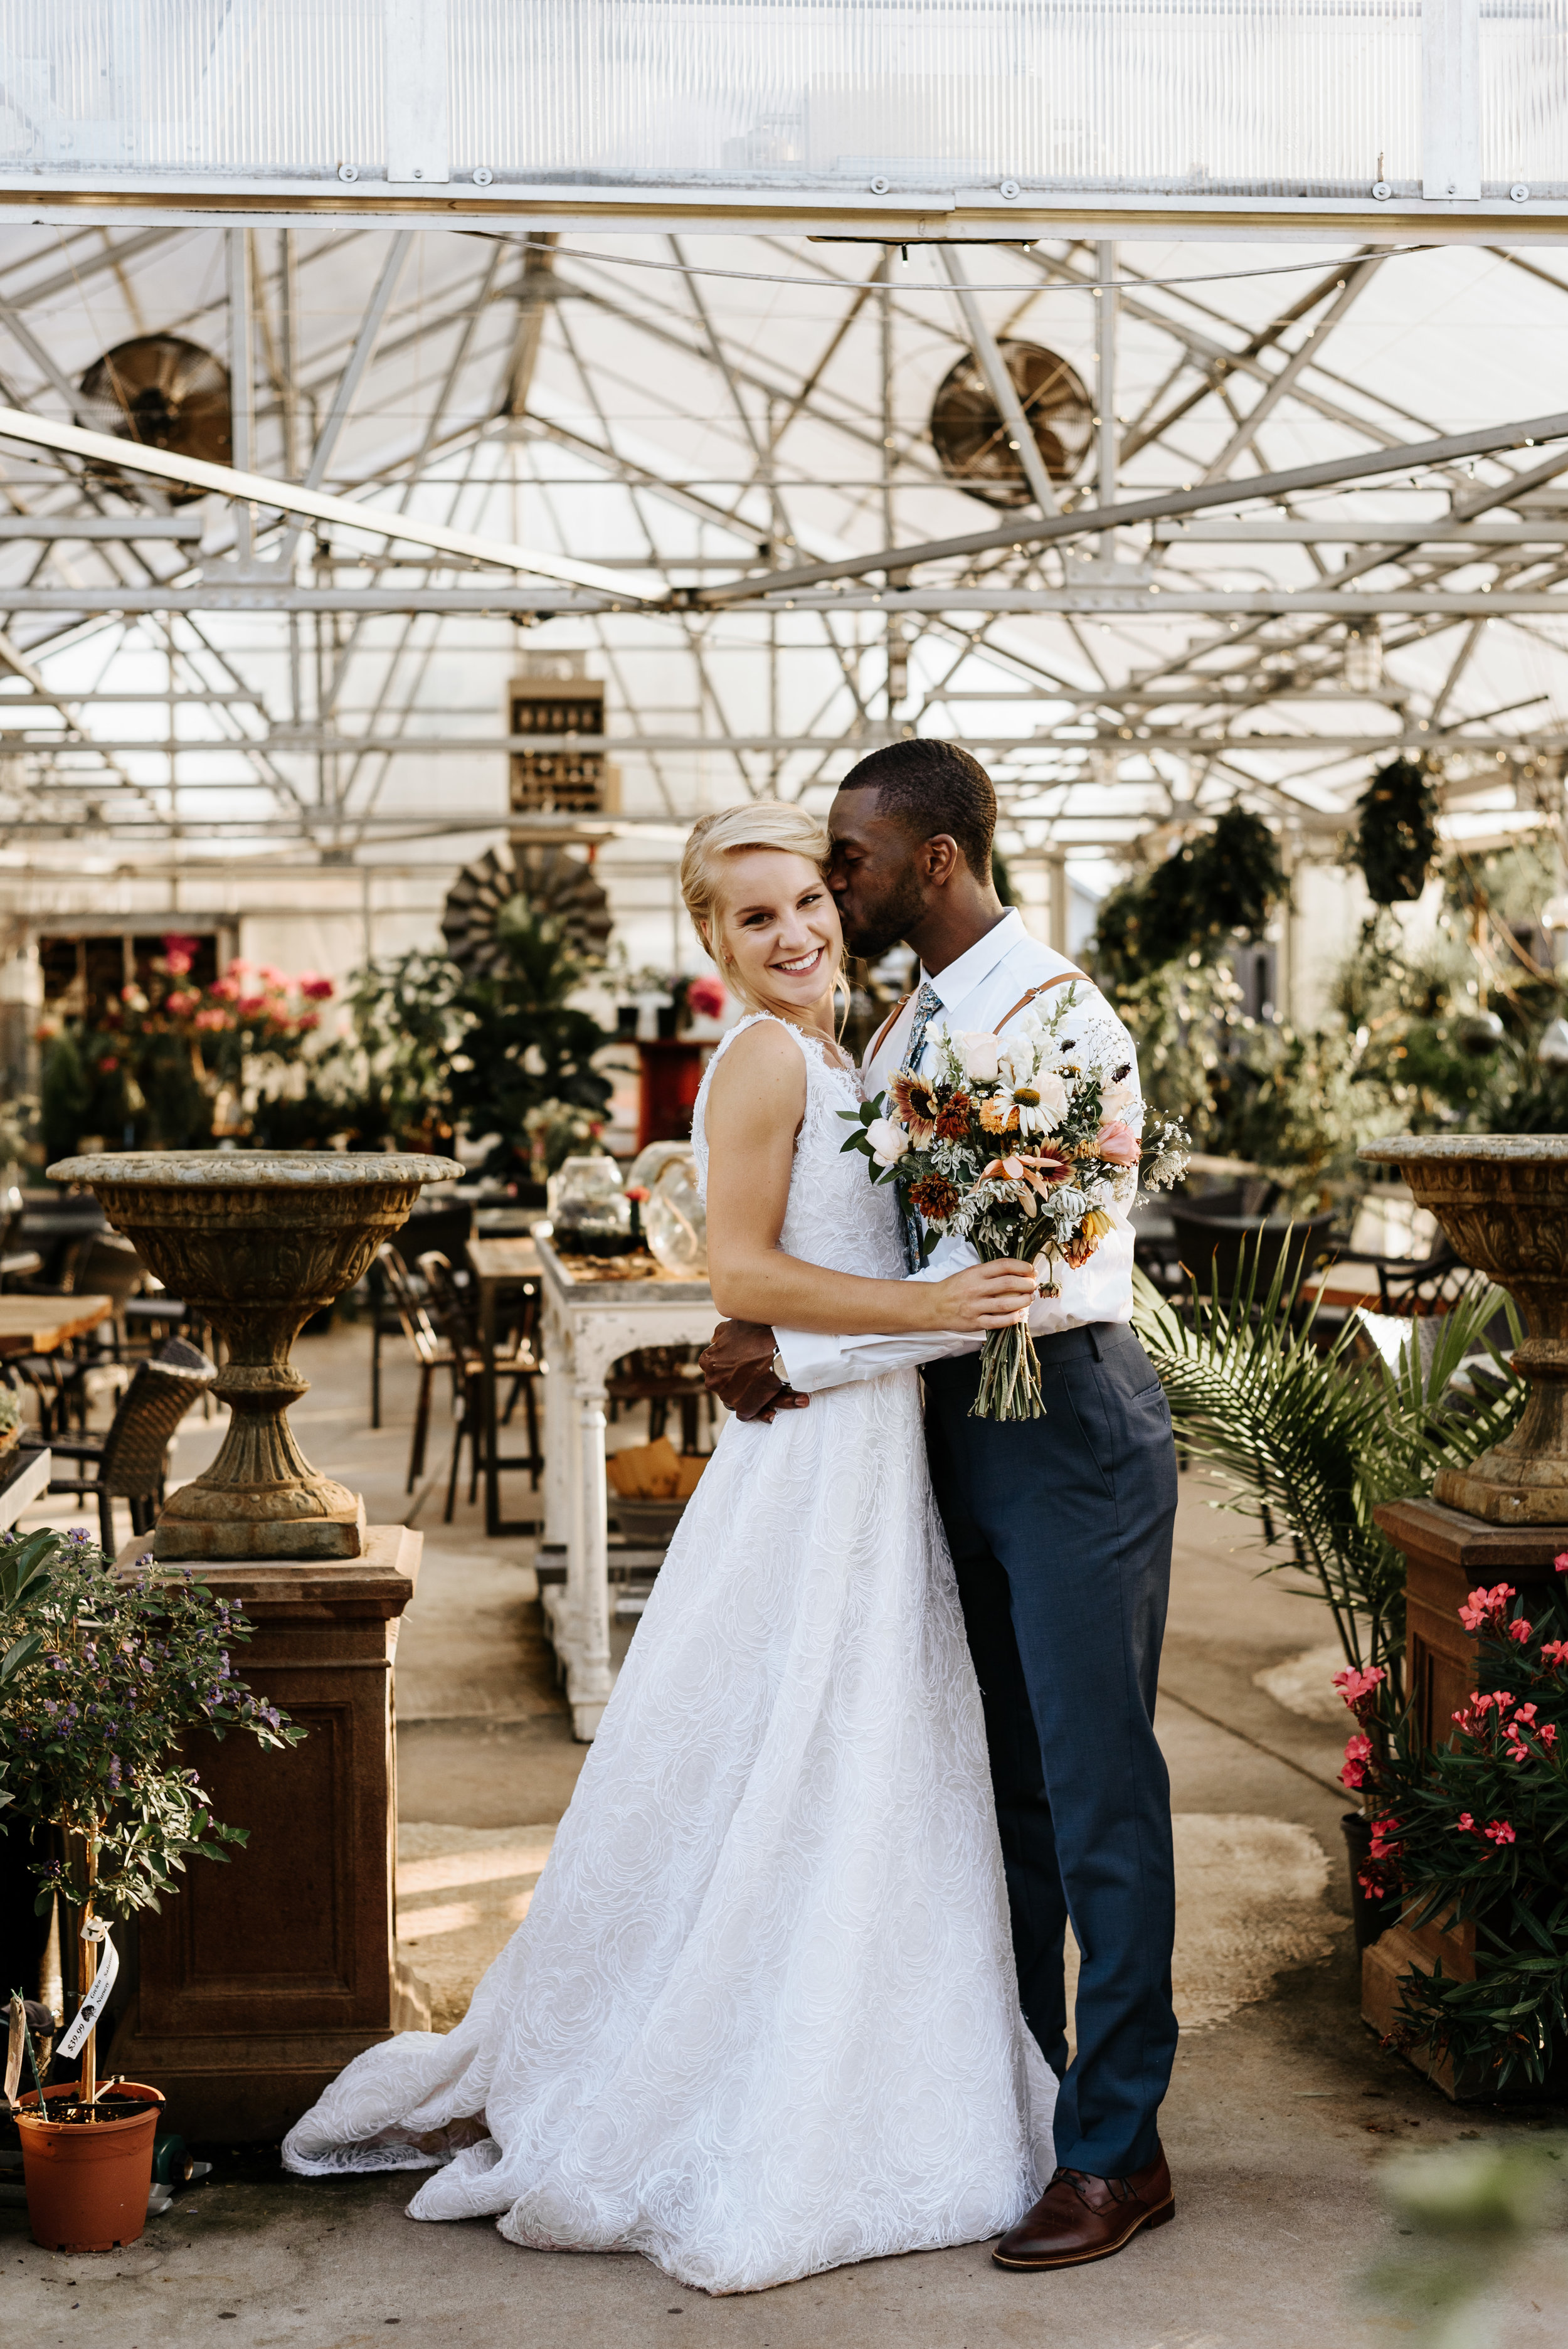 Lauren-Trell-Wedding-Market-at-Grelen-Virginia-Photography-by-V-6390.jpg